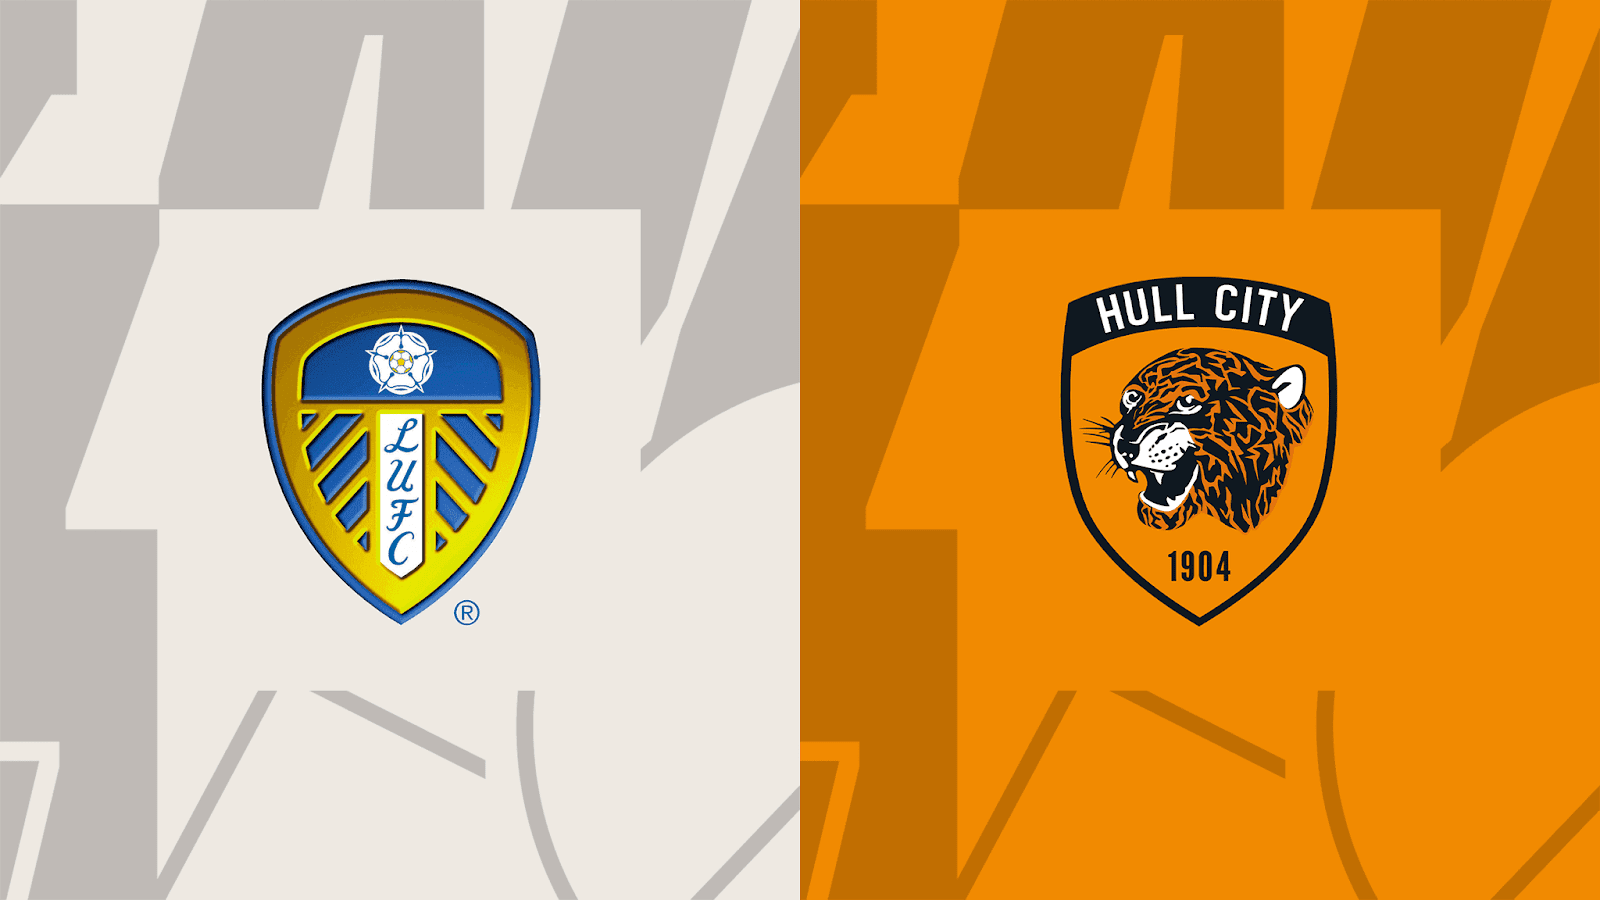 Giới thiệu chi tiết về 2 đội Leeds United vs Hull City